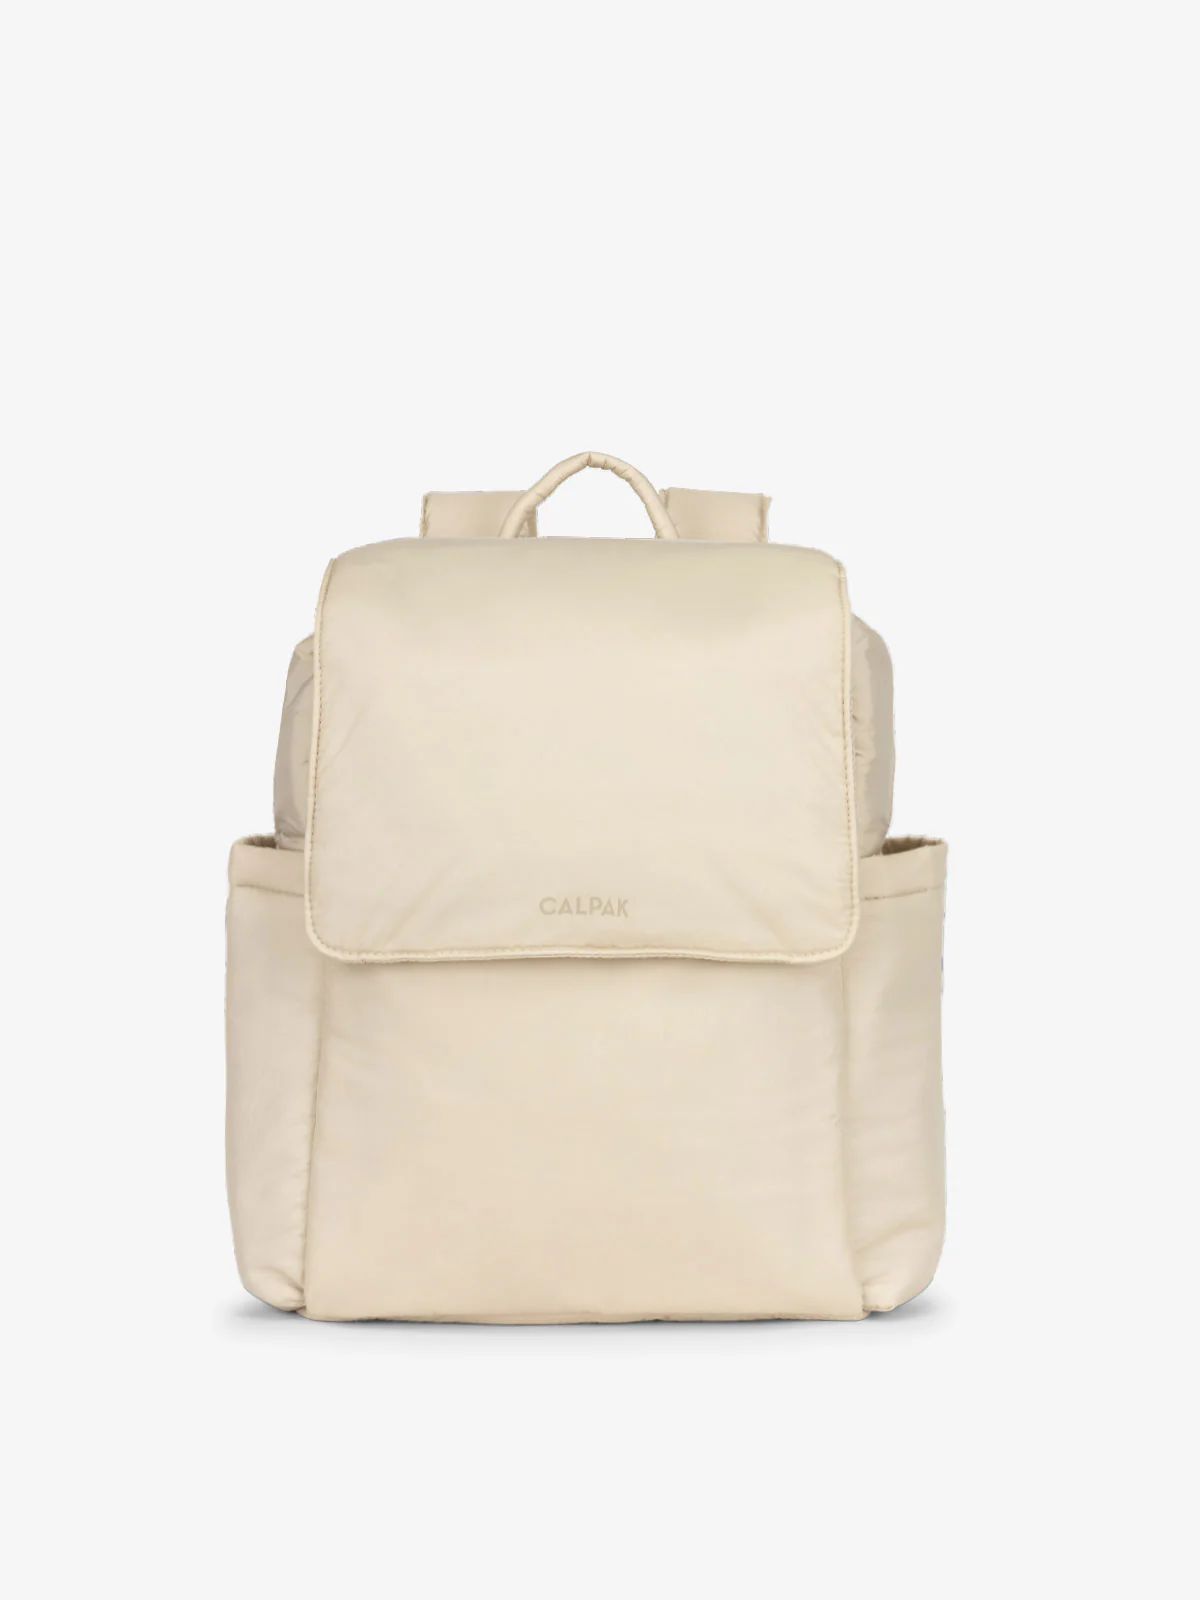 Convertible Mini Diaper Backpack | CALPAK Travel